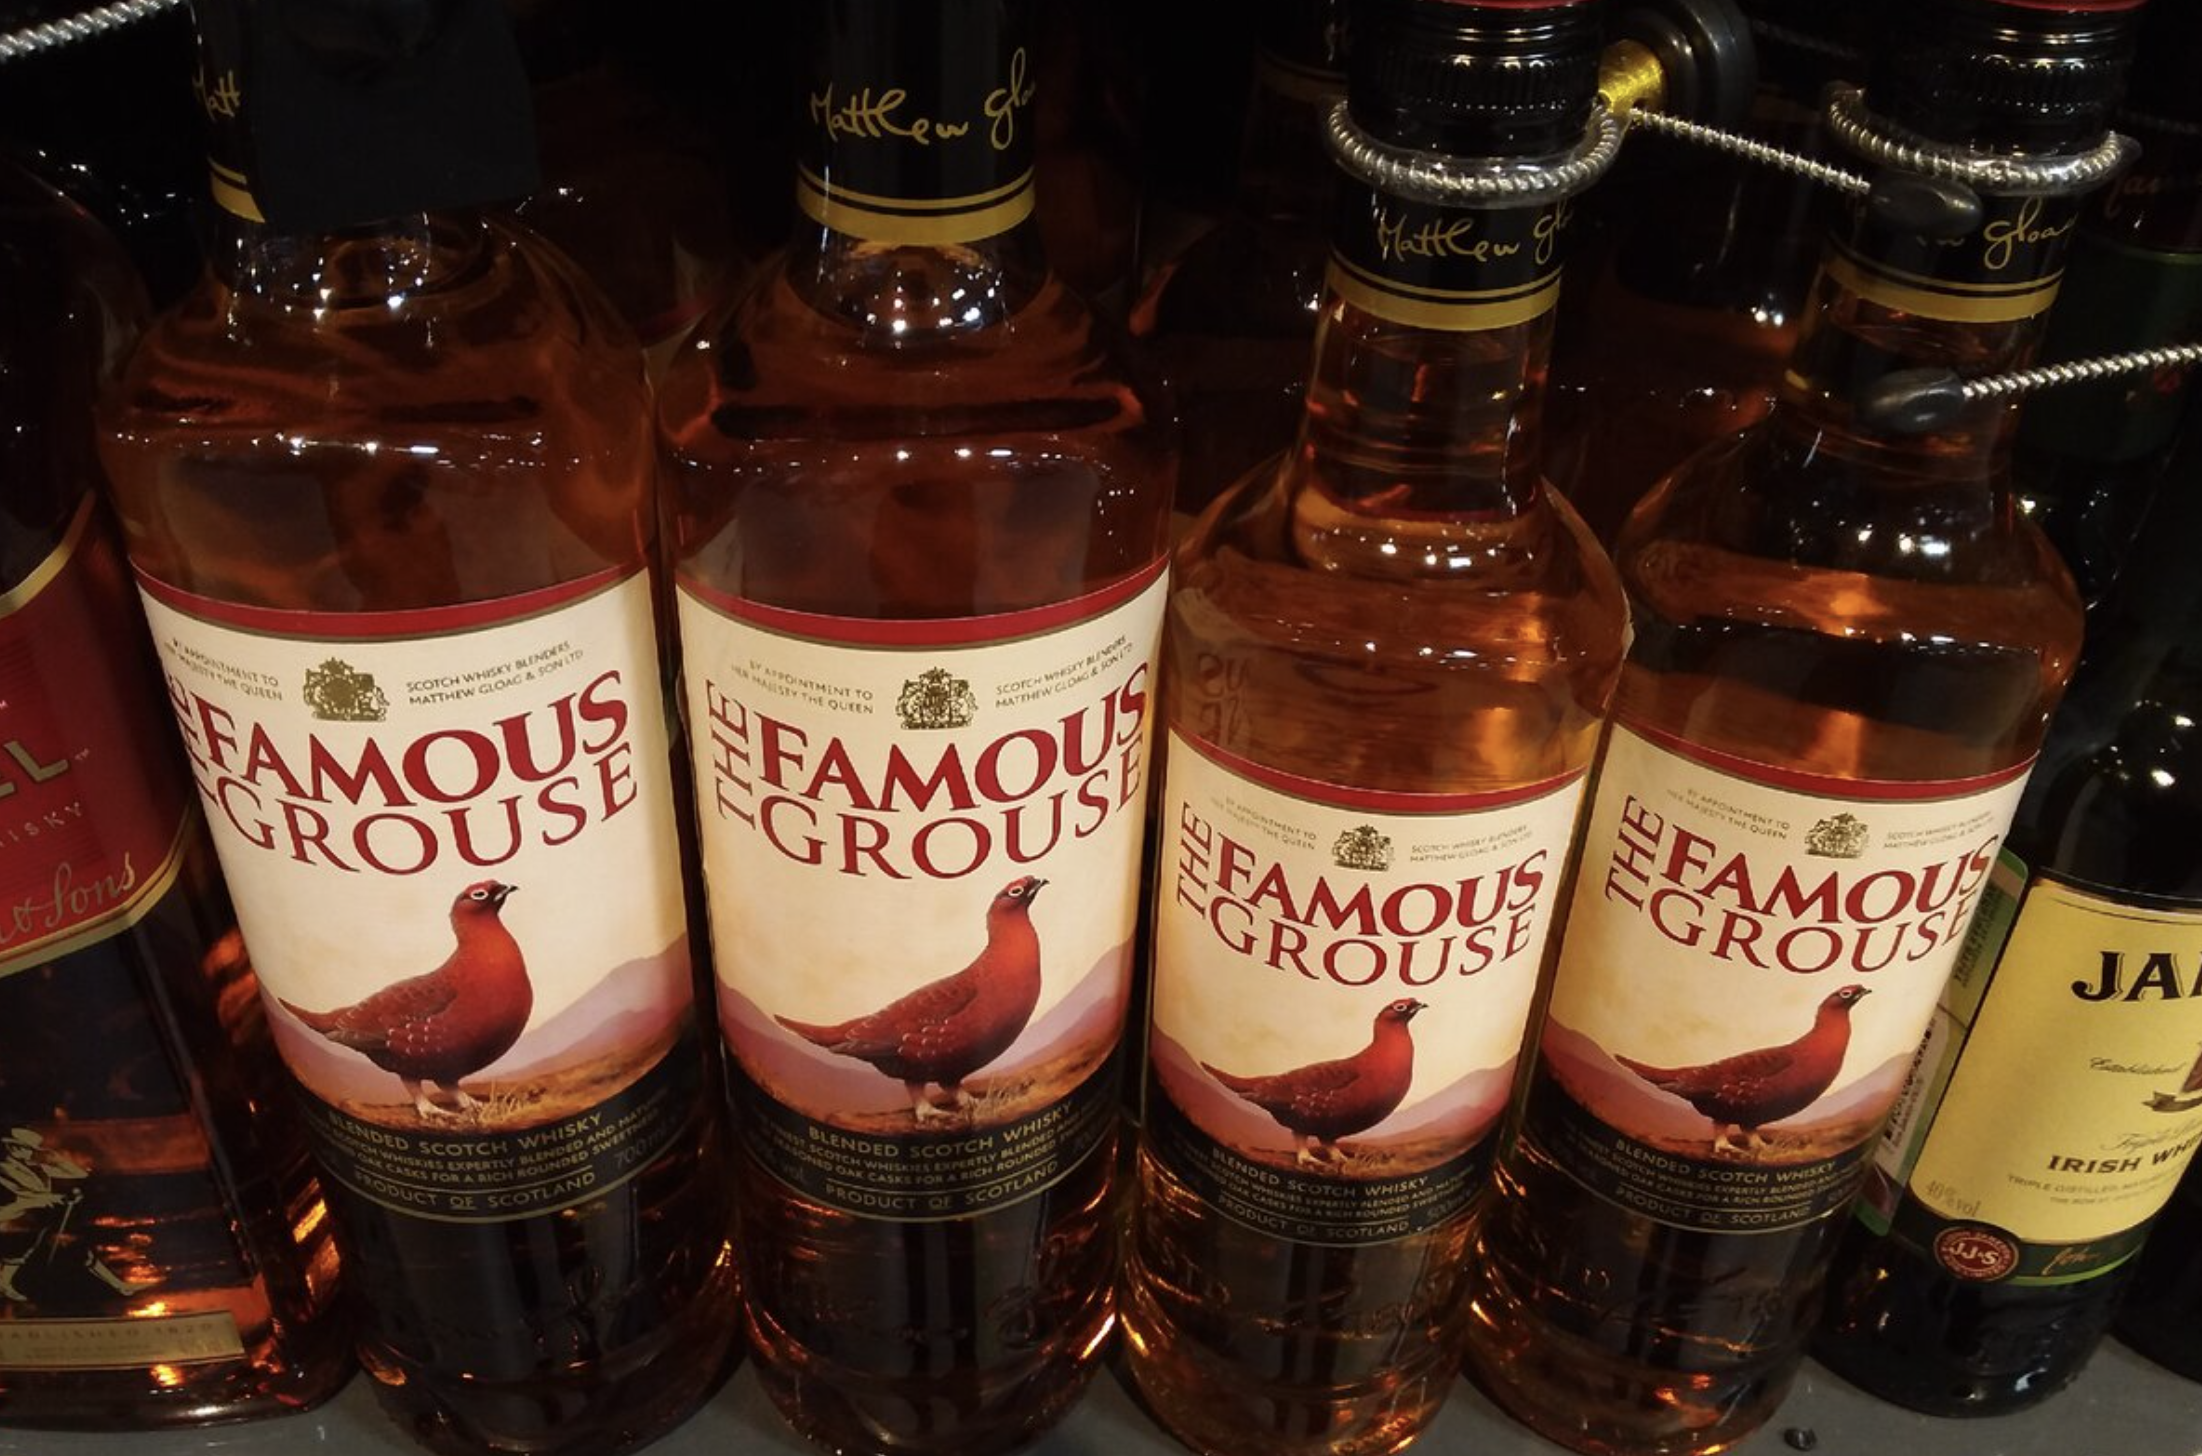 Famous grouse - лучший купажированный виски шотландии. история, описание видов